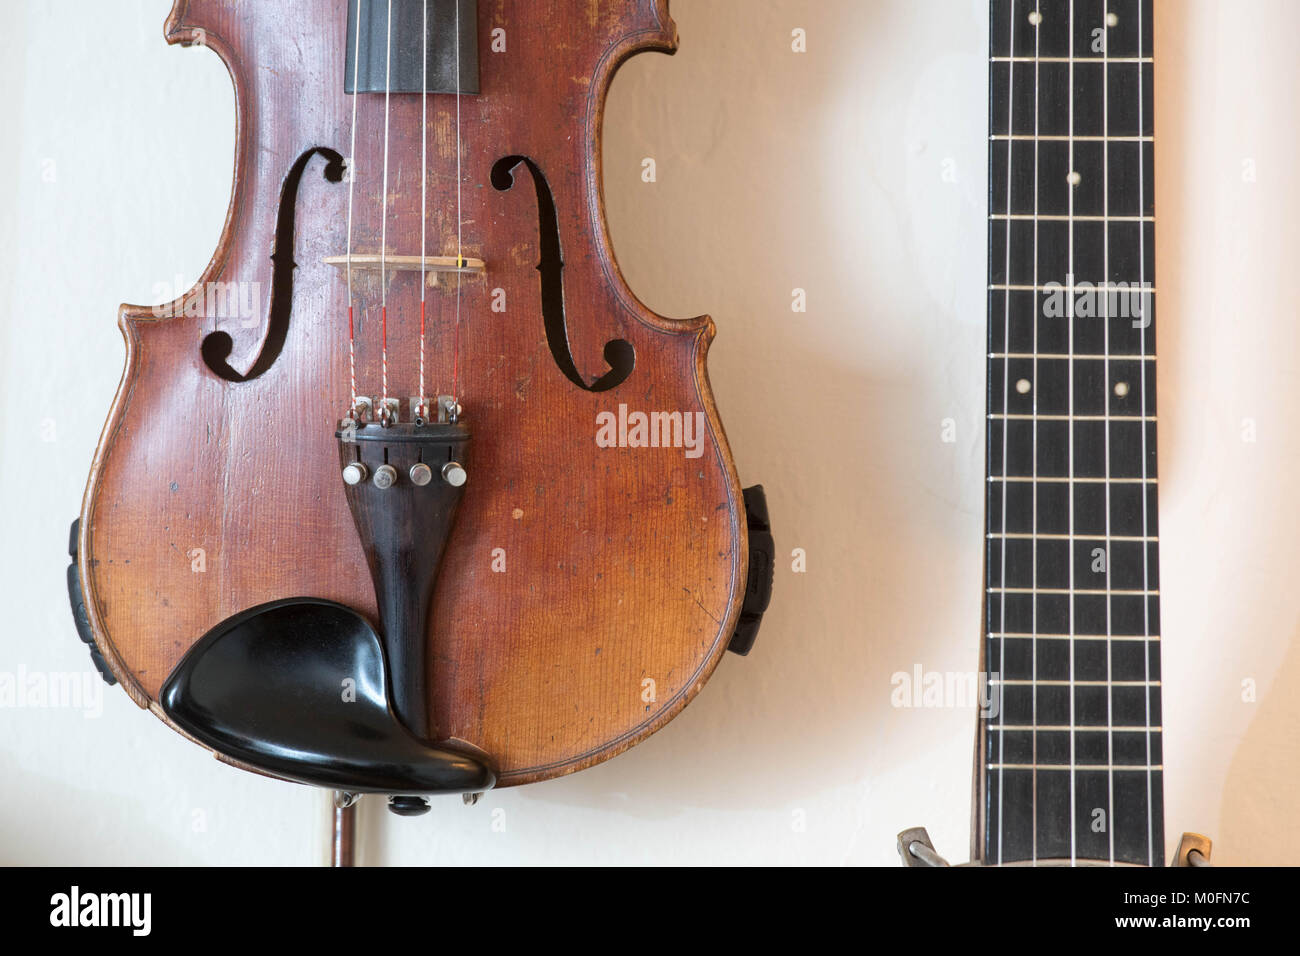 El violín y la guitarra de colgar en una pared. Foto de stock